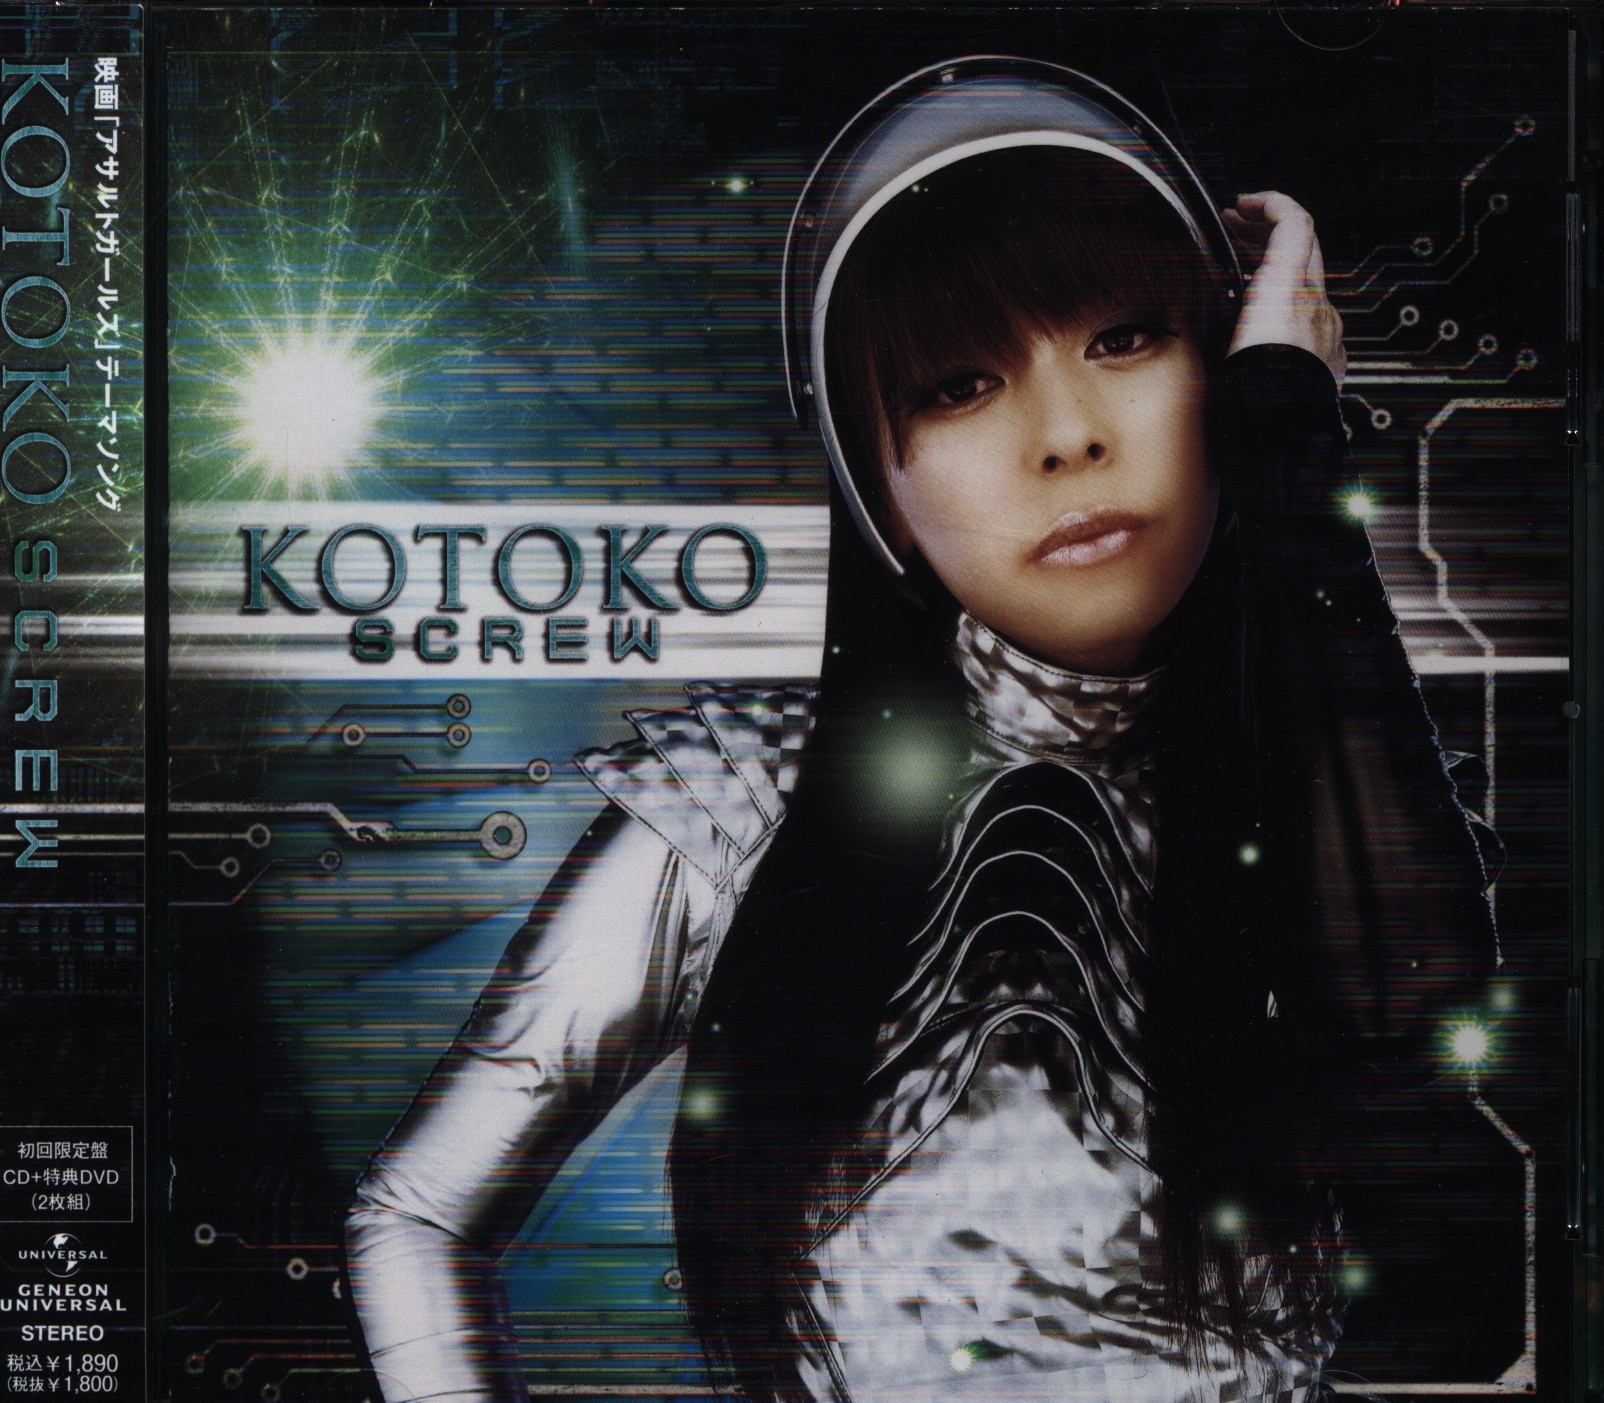 特撮CD KOTOKO DVD付限定盤)SCREW/映画アサルト・ガールズ ...